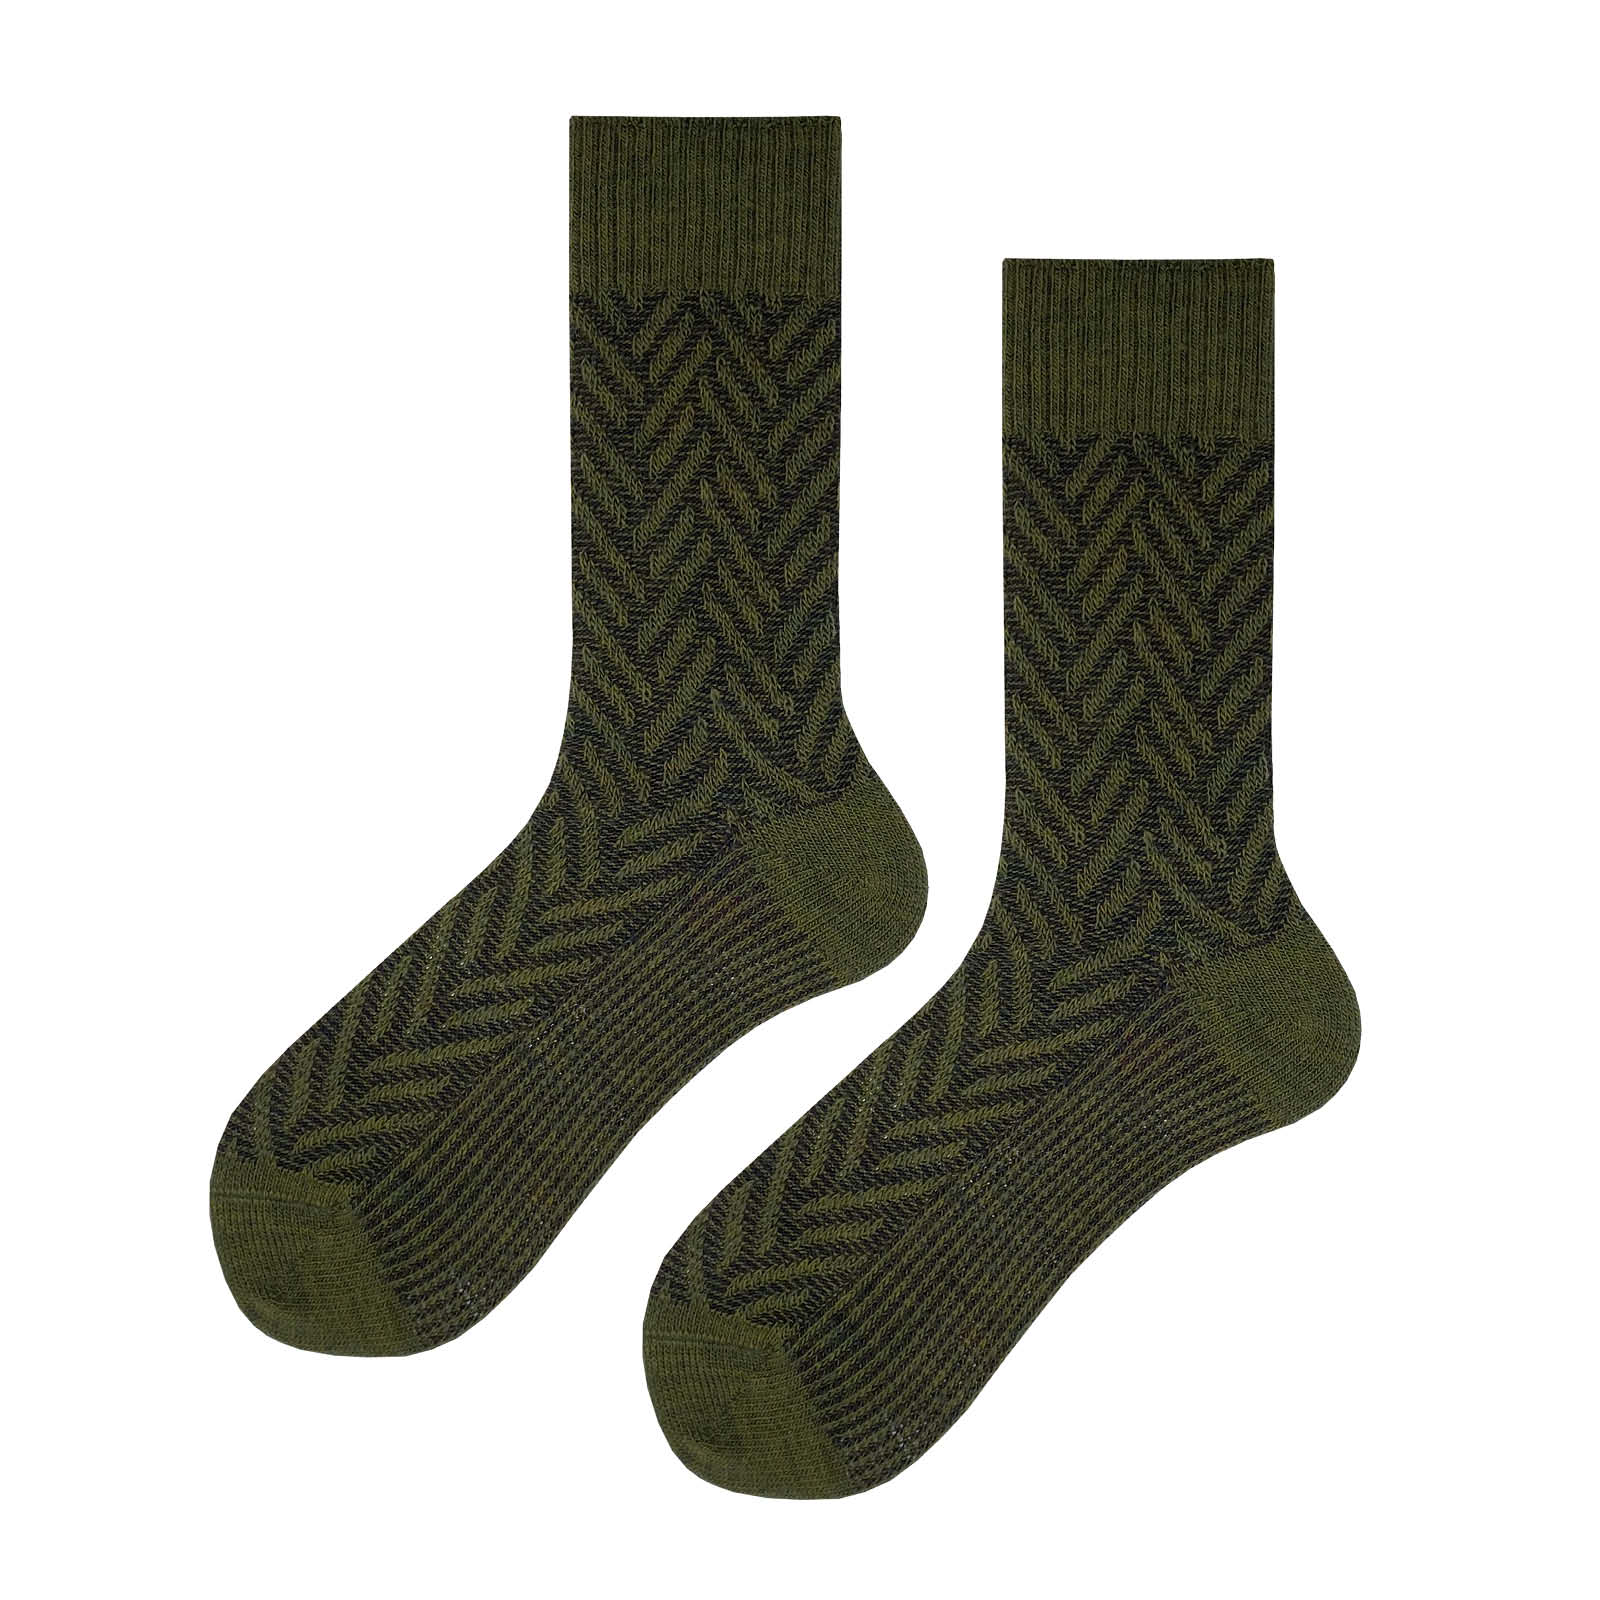 HUDSON Herren ARROW -  39/42 - Herren Socken mit klassischer  winterlicher Musterung - Militarymel. (Grün)